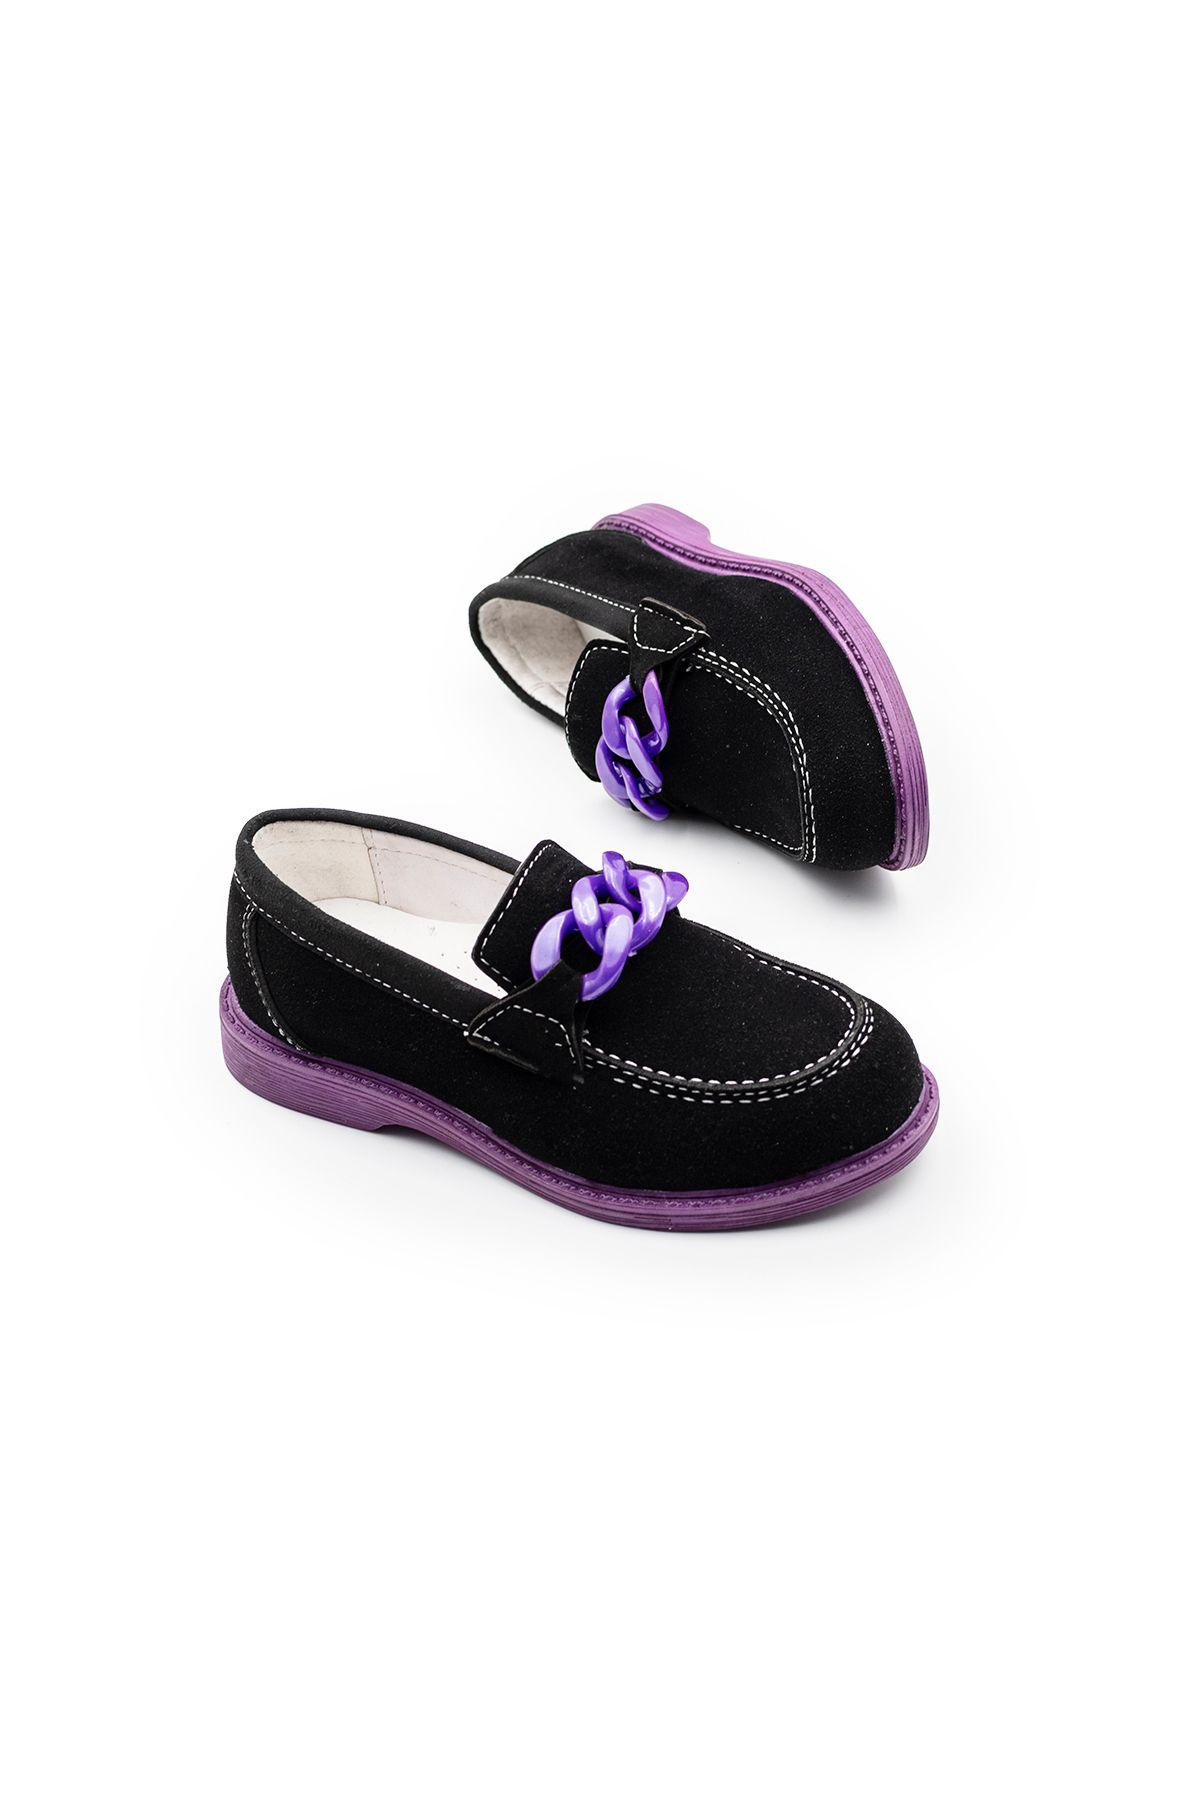 Brono Ayakkabı Kız Çocuk Hafif Tabanlı Günlük Klasik Ayakkabı 1201